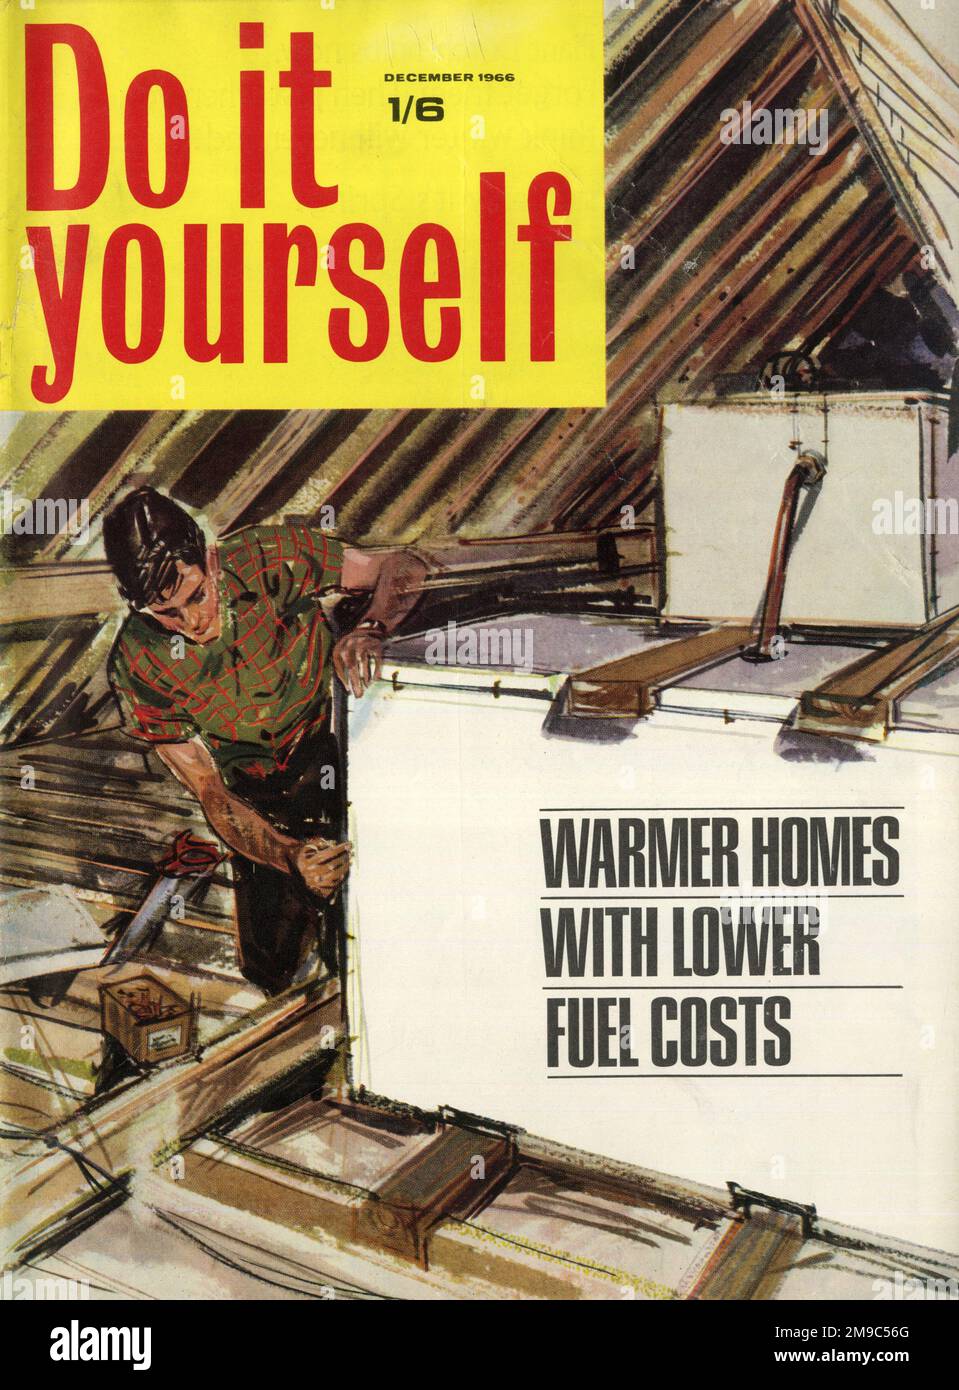 Couvrir la conception, faites-le vous-même, décembre 1966 - maisons plus chaudes avec des coûts de carburant inférieurs Banque D'Images